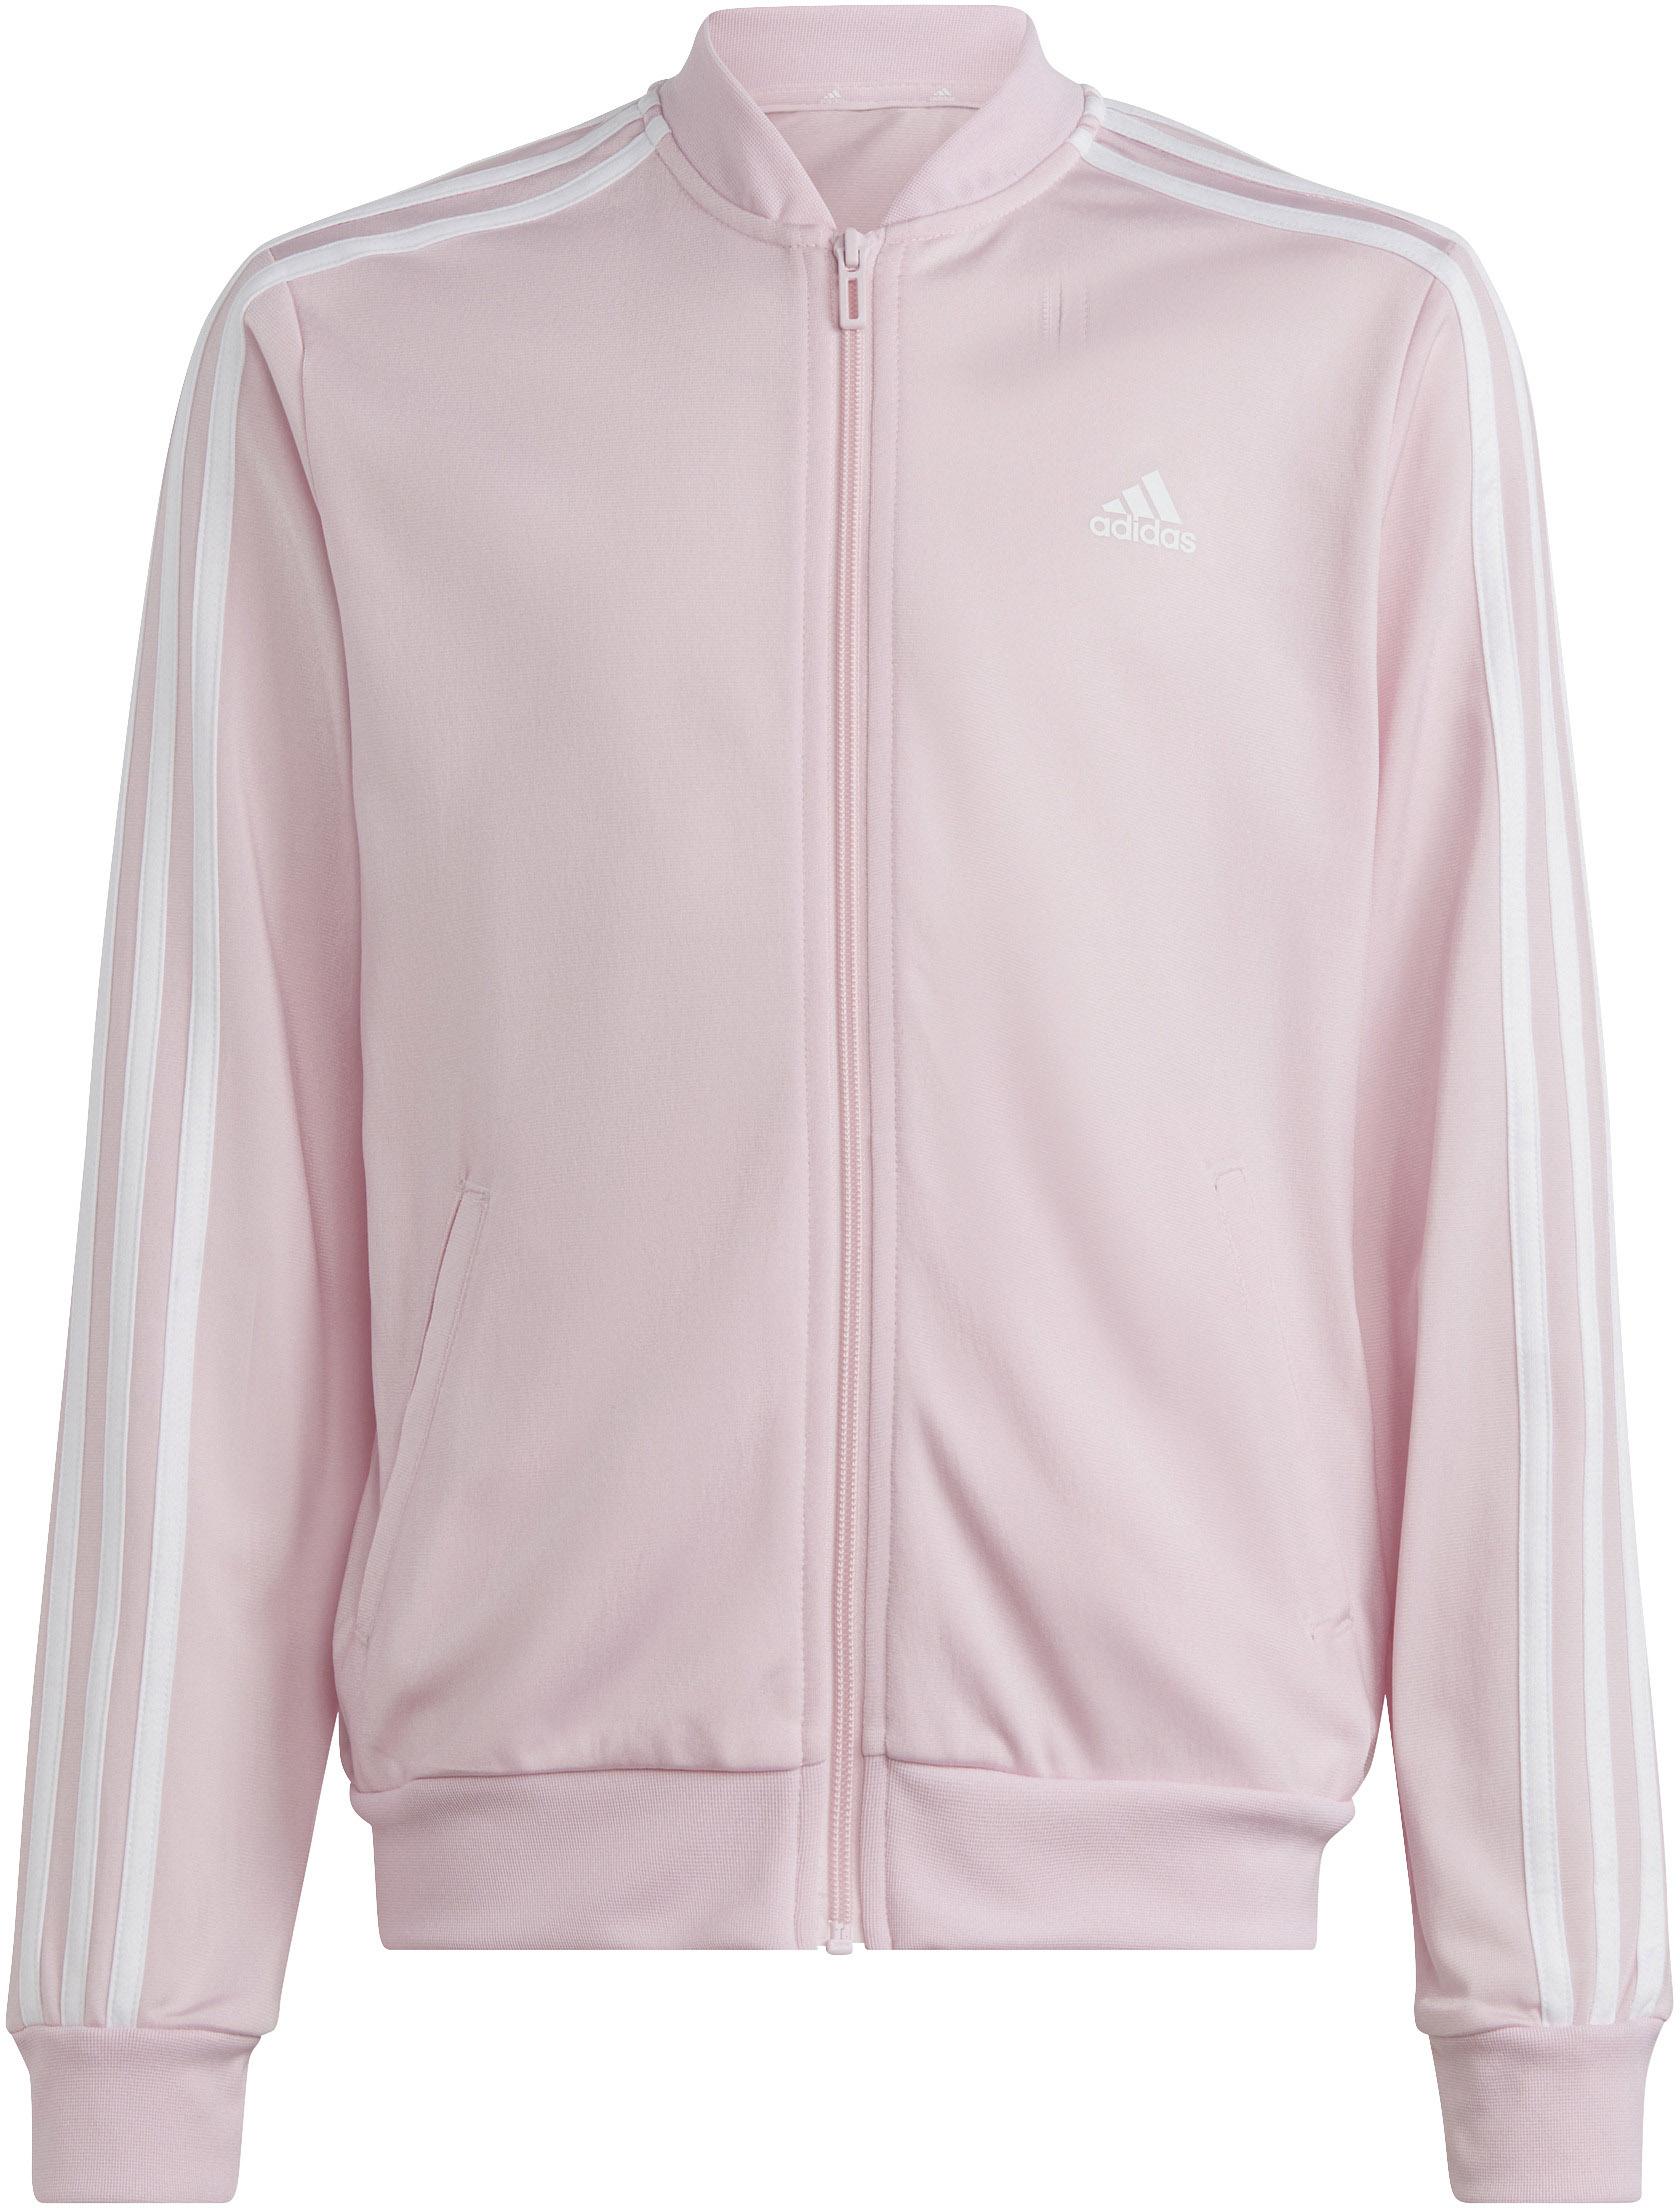 Adidas Trainingsanzug Mädchen Online clear im fuchsia-white SportScheck Shop kaufen von lucid pink-semi